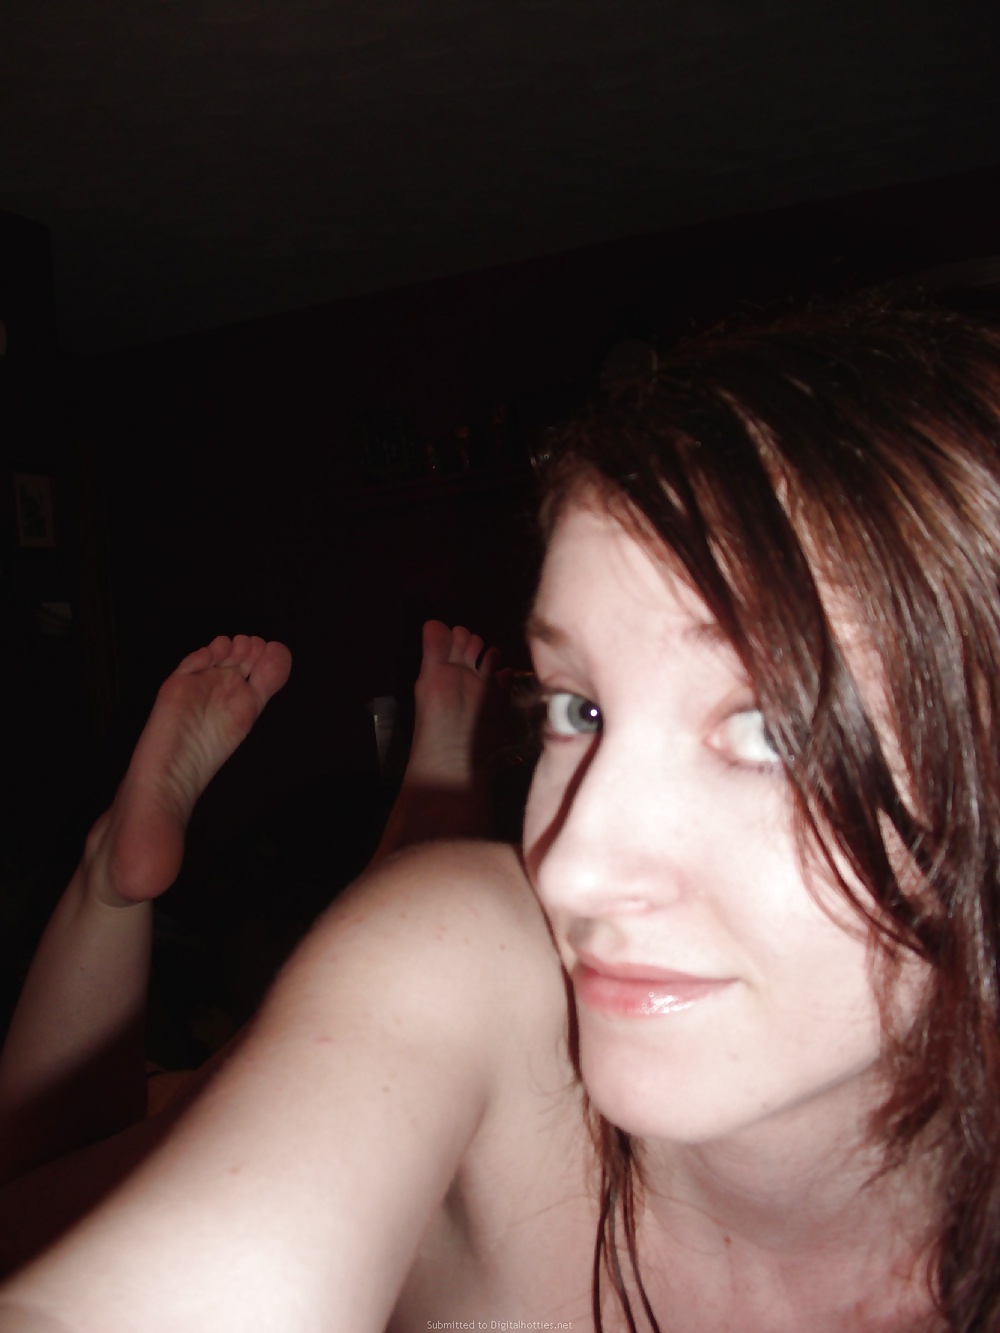 Private Teen Selfies Nude pict gal